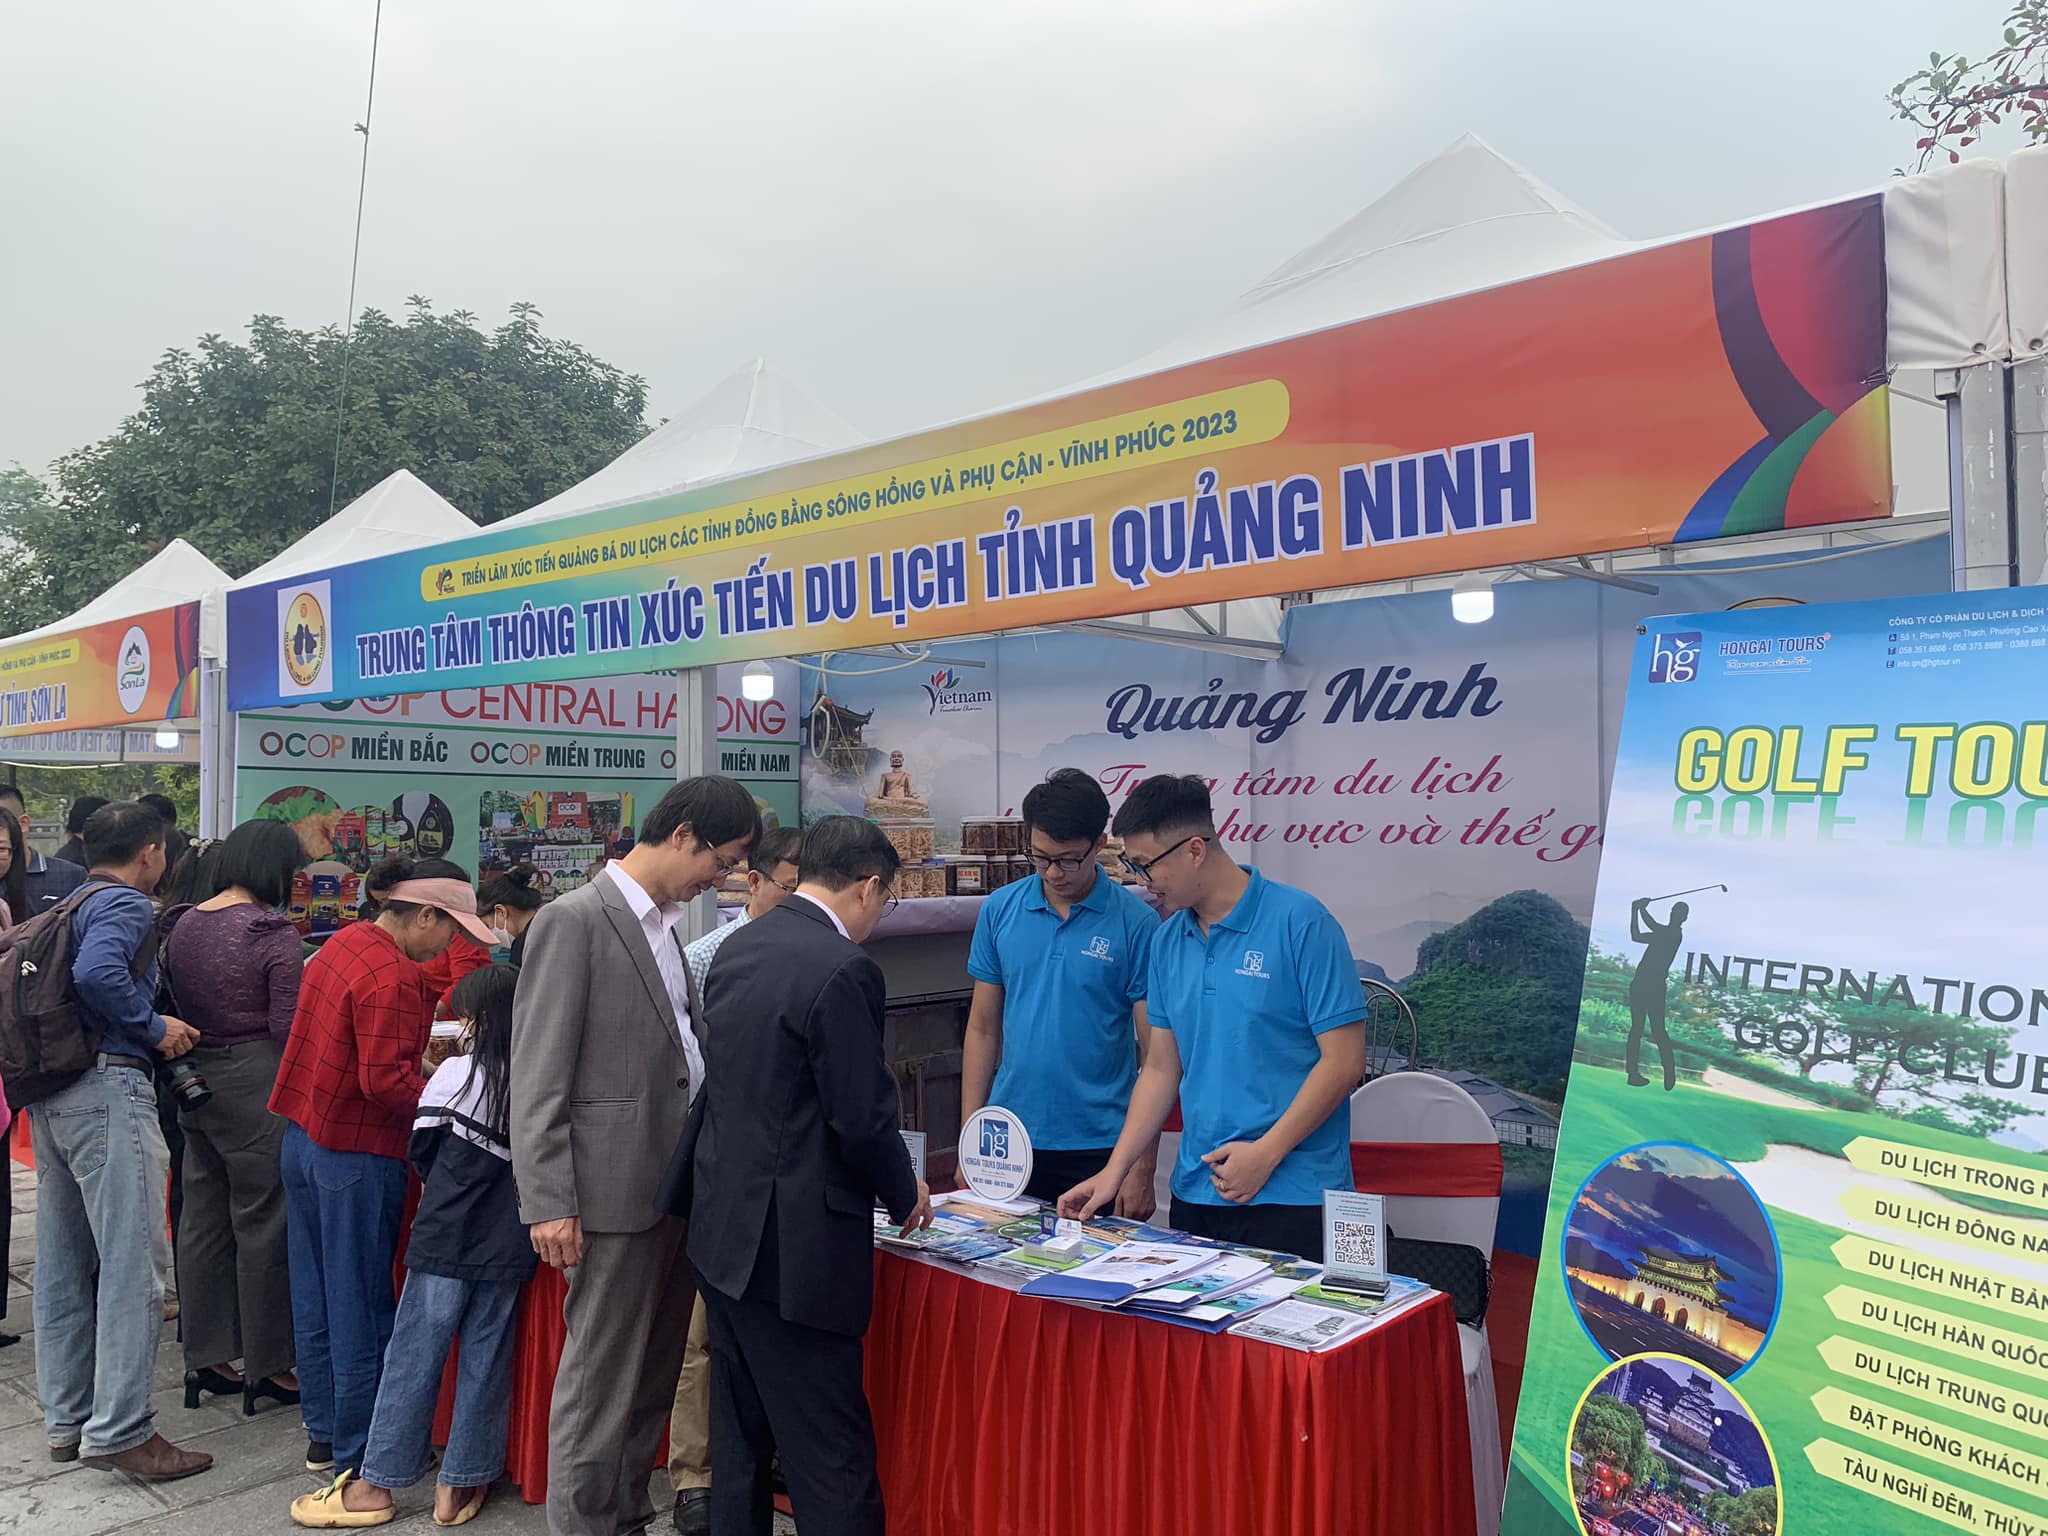 Du lịch Quảng Ninh tham gia “Triển lãm xúc tiến quảng bá du lịch các tỉnh đồng bằng sông Hồng và phụ cận - Vĩnh Phúc 2023”